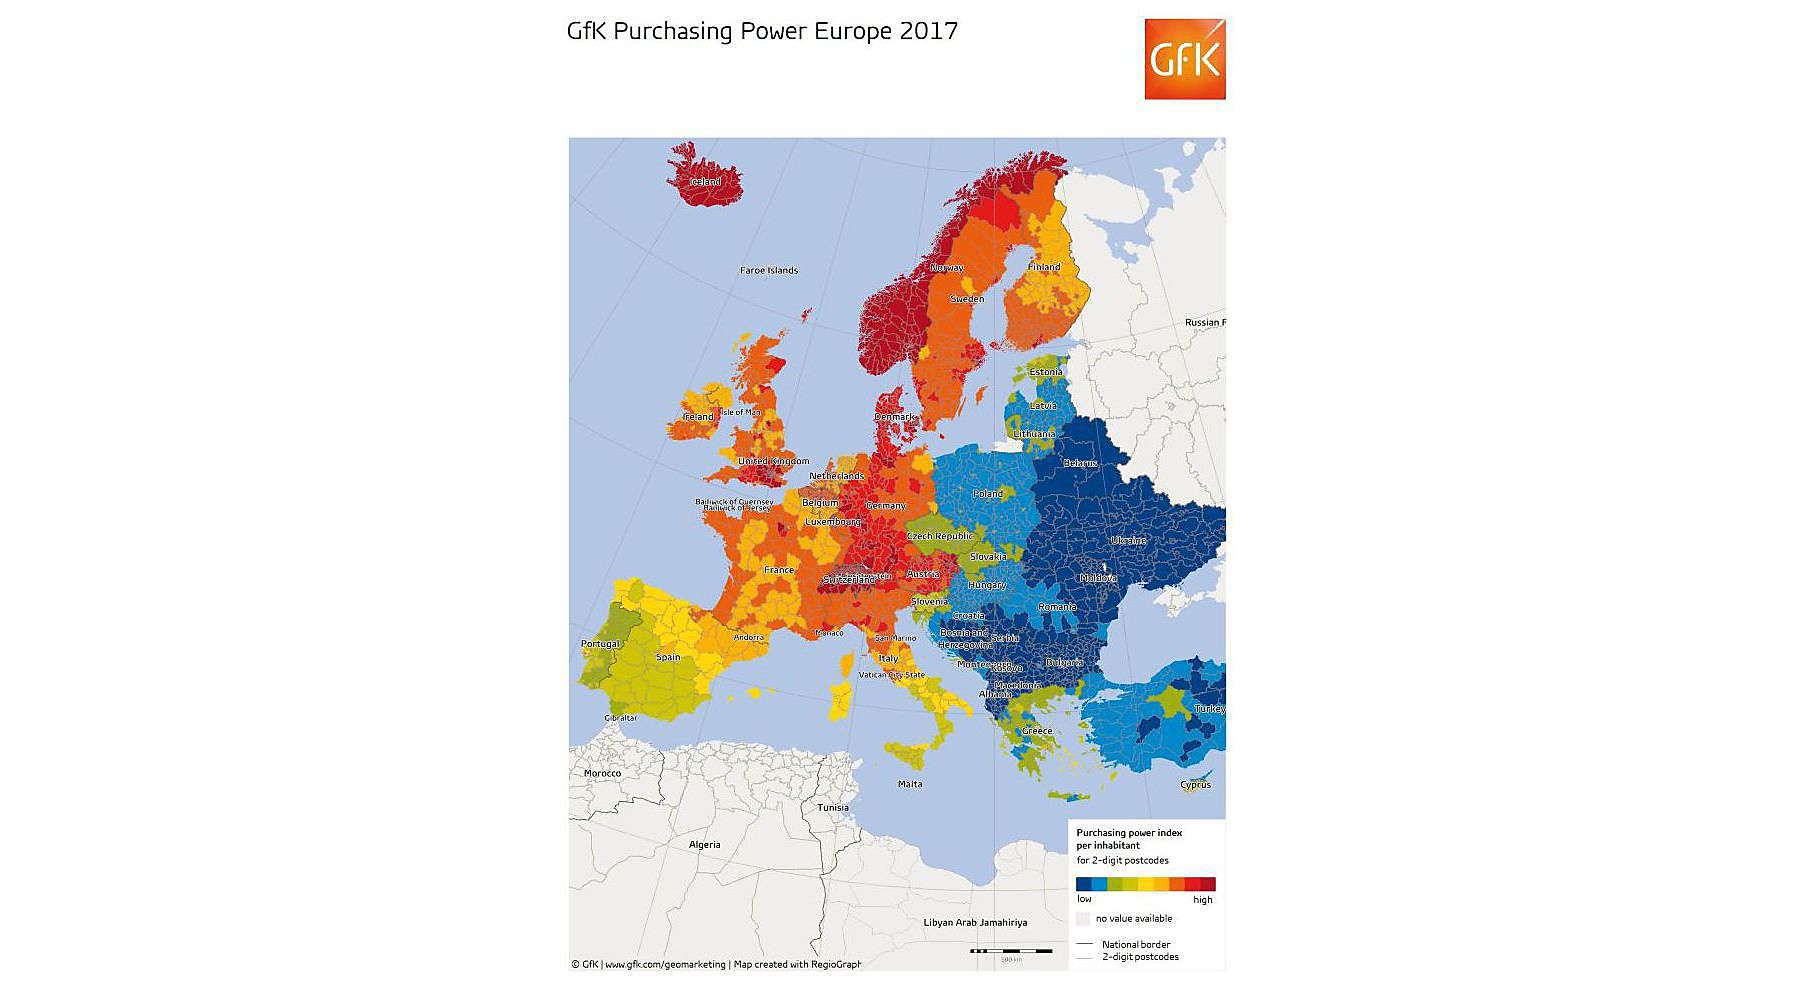 Le pouvoir d'achat européen a augmenté de 1,9% en 2017